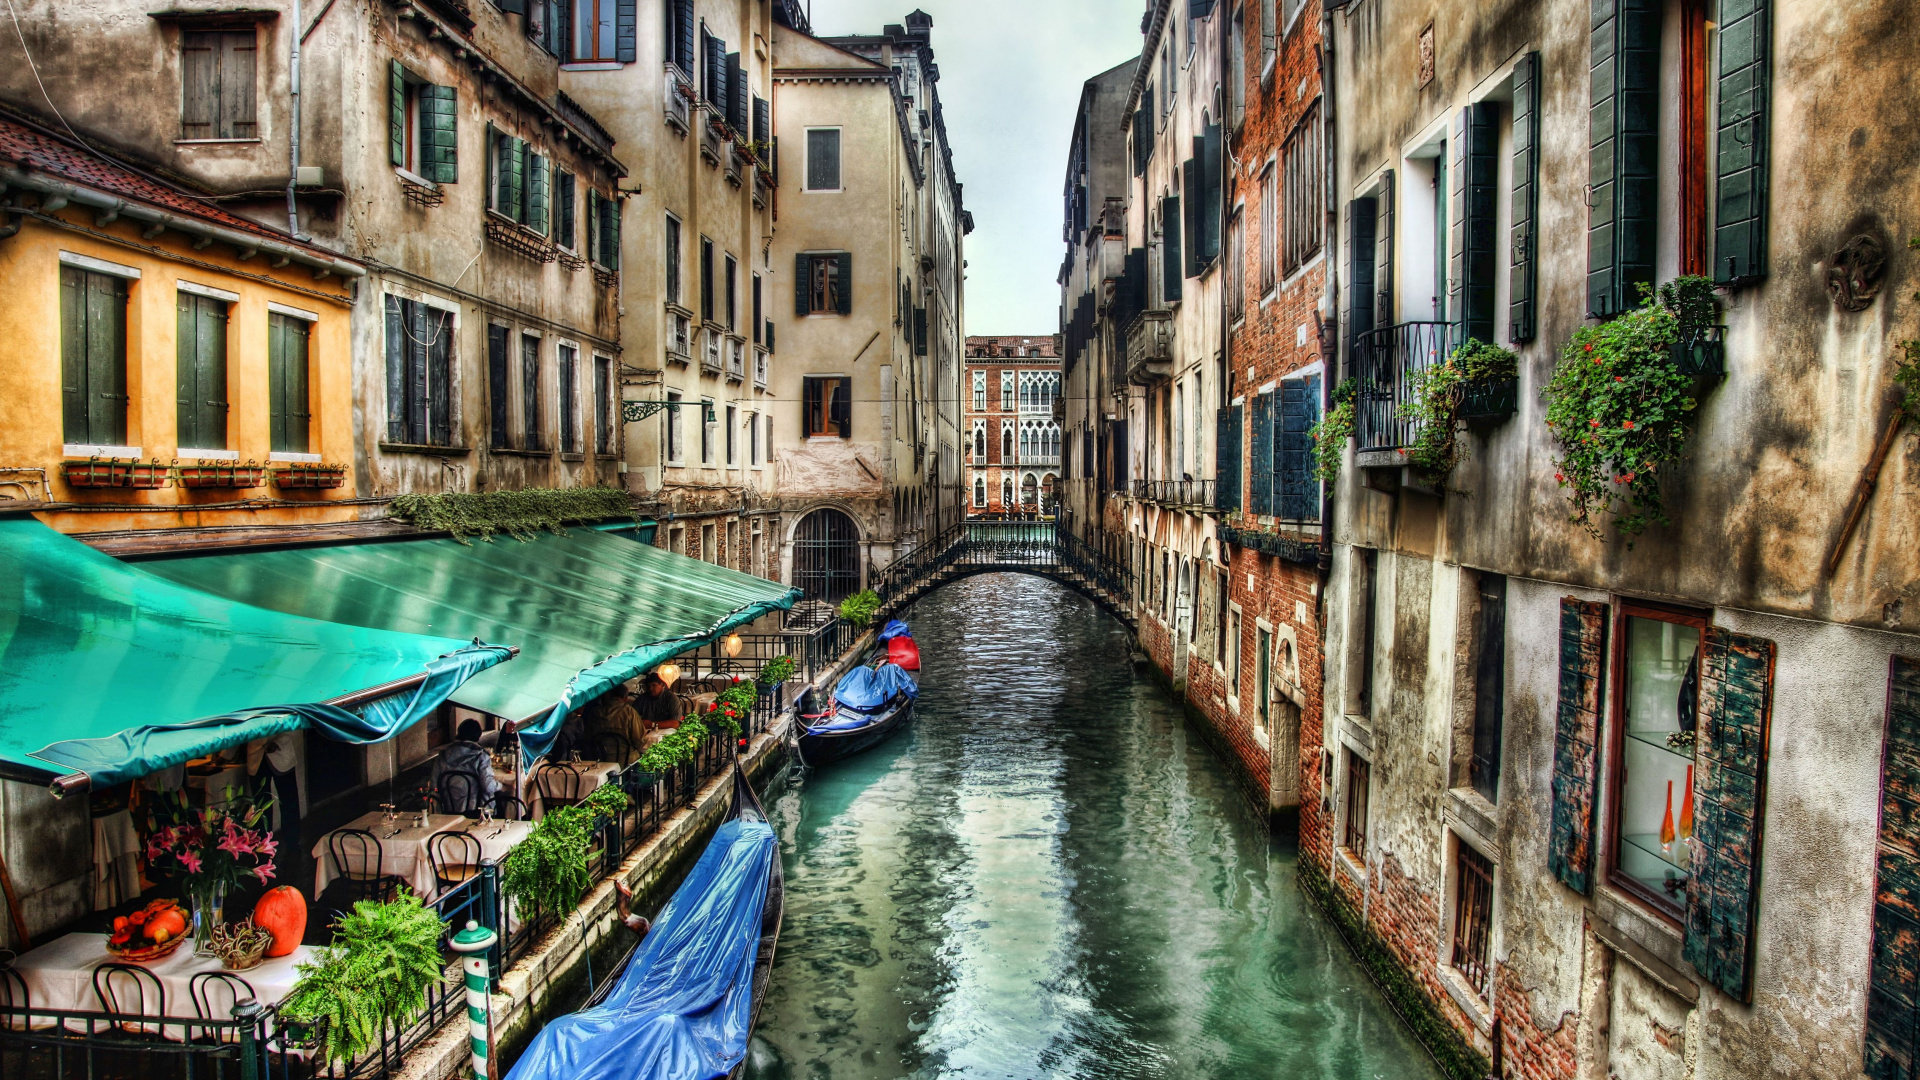 威尼斯, 运河, 滑雪缆车, 巷子里, 旅游业 壁纸 1920x1080 允许